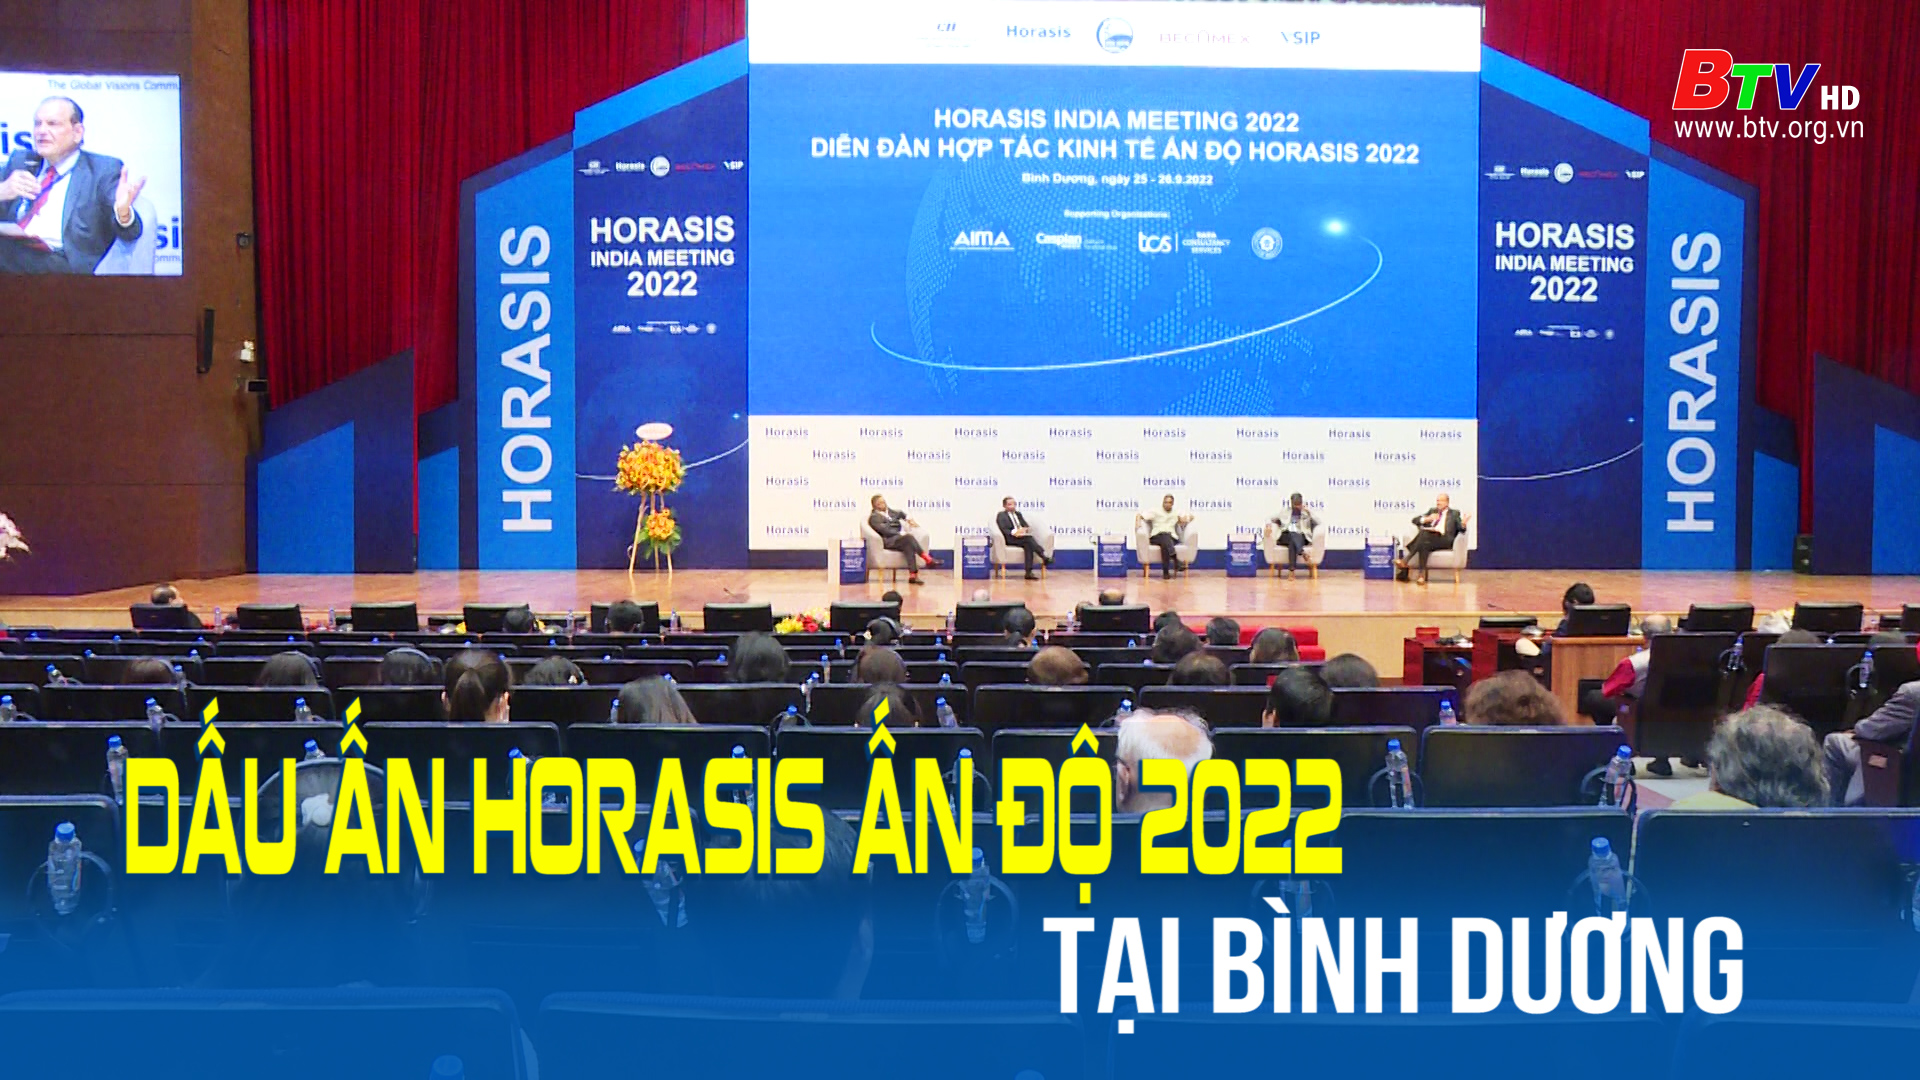 Dấu ấn Horasis Ấn Độ 2022 tại Bình Dương